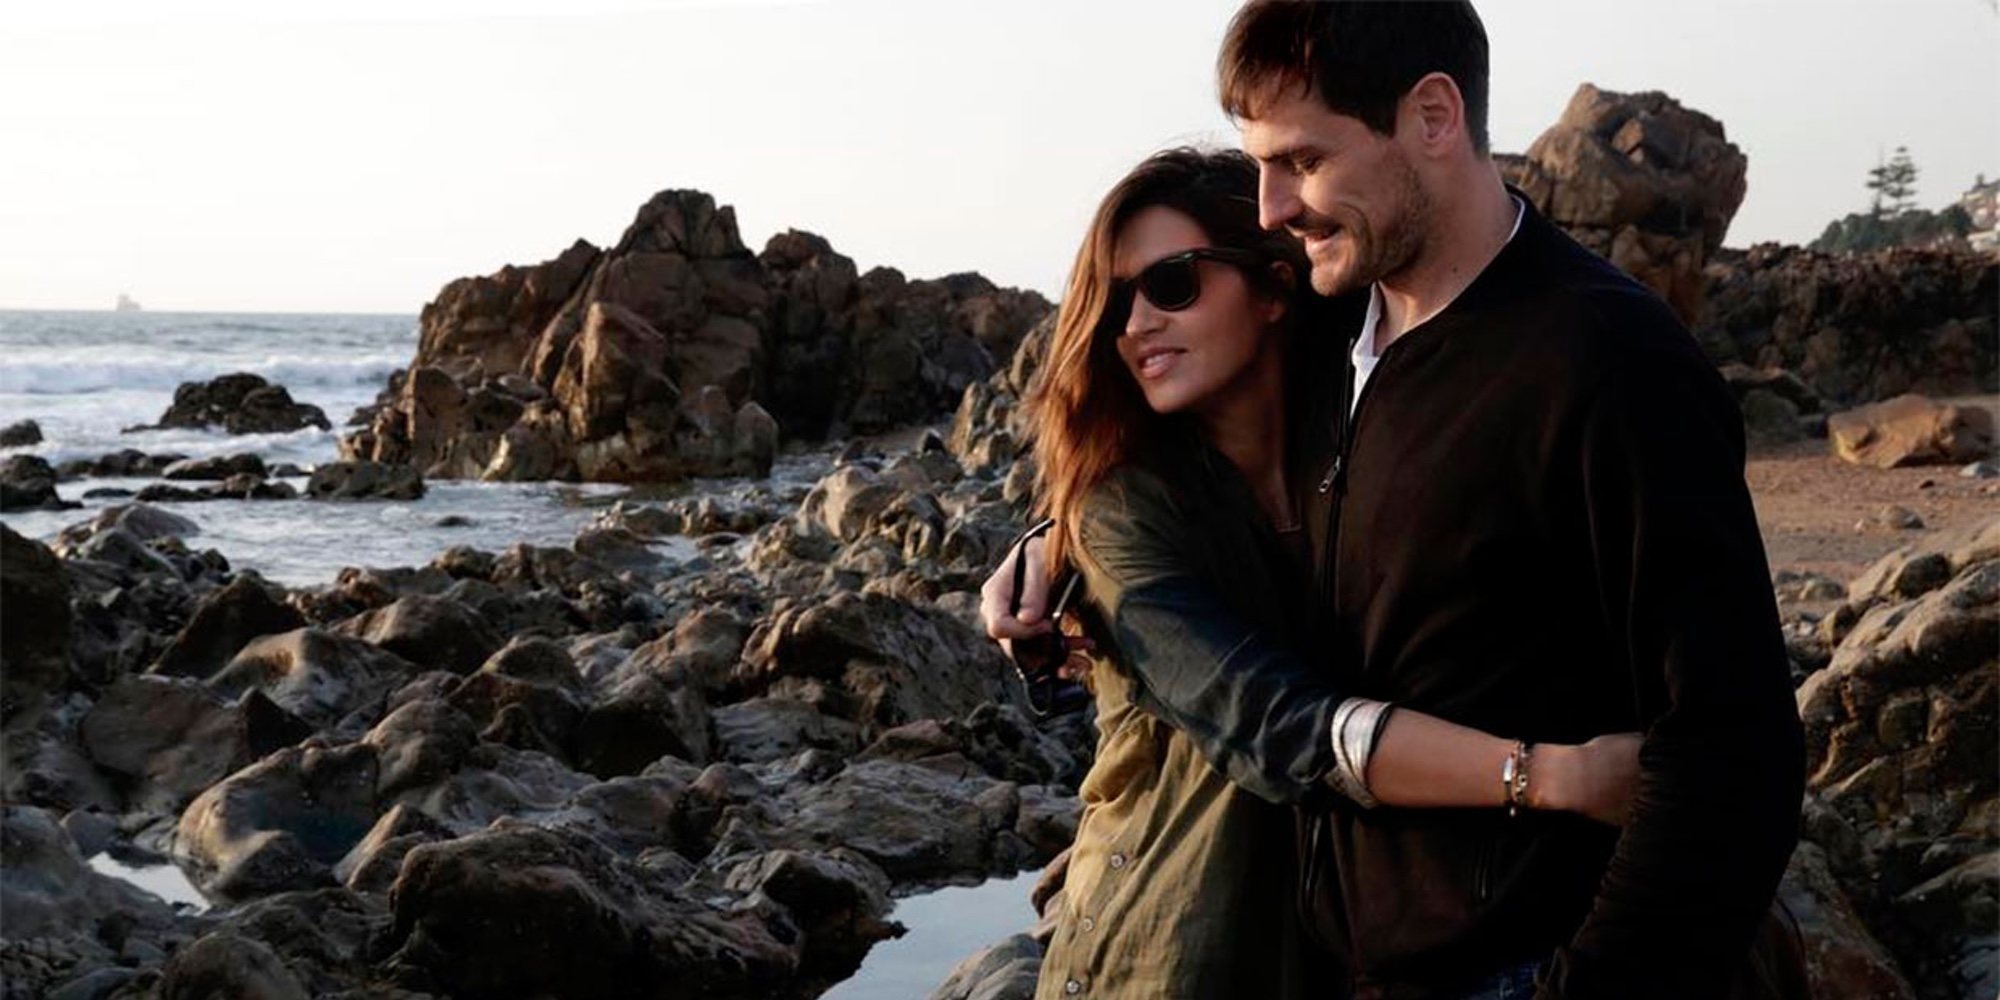 Sara Carbonero e Iker Casillas regresan a Oporto tras sus vacaciones de verano en España